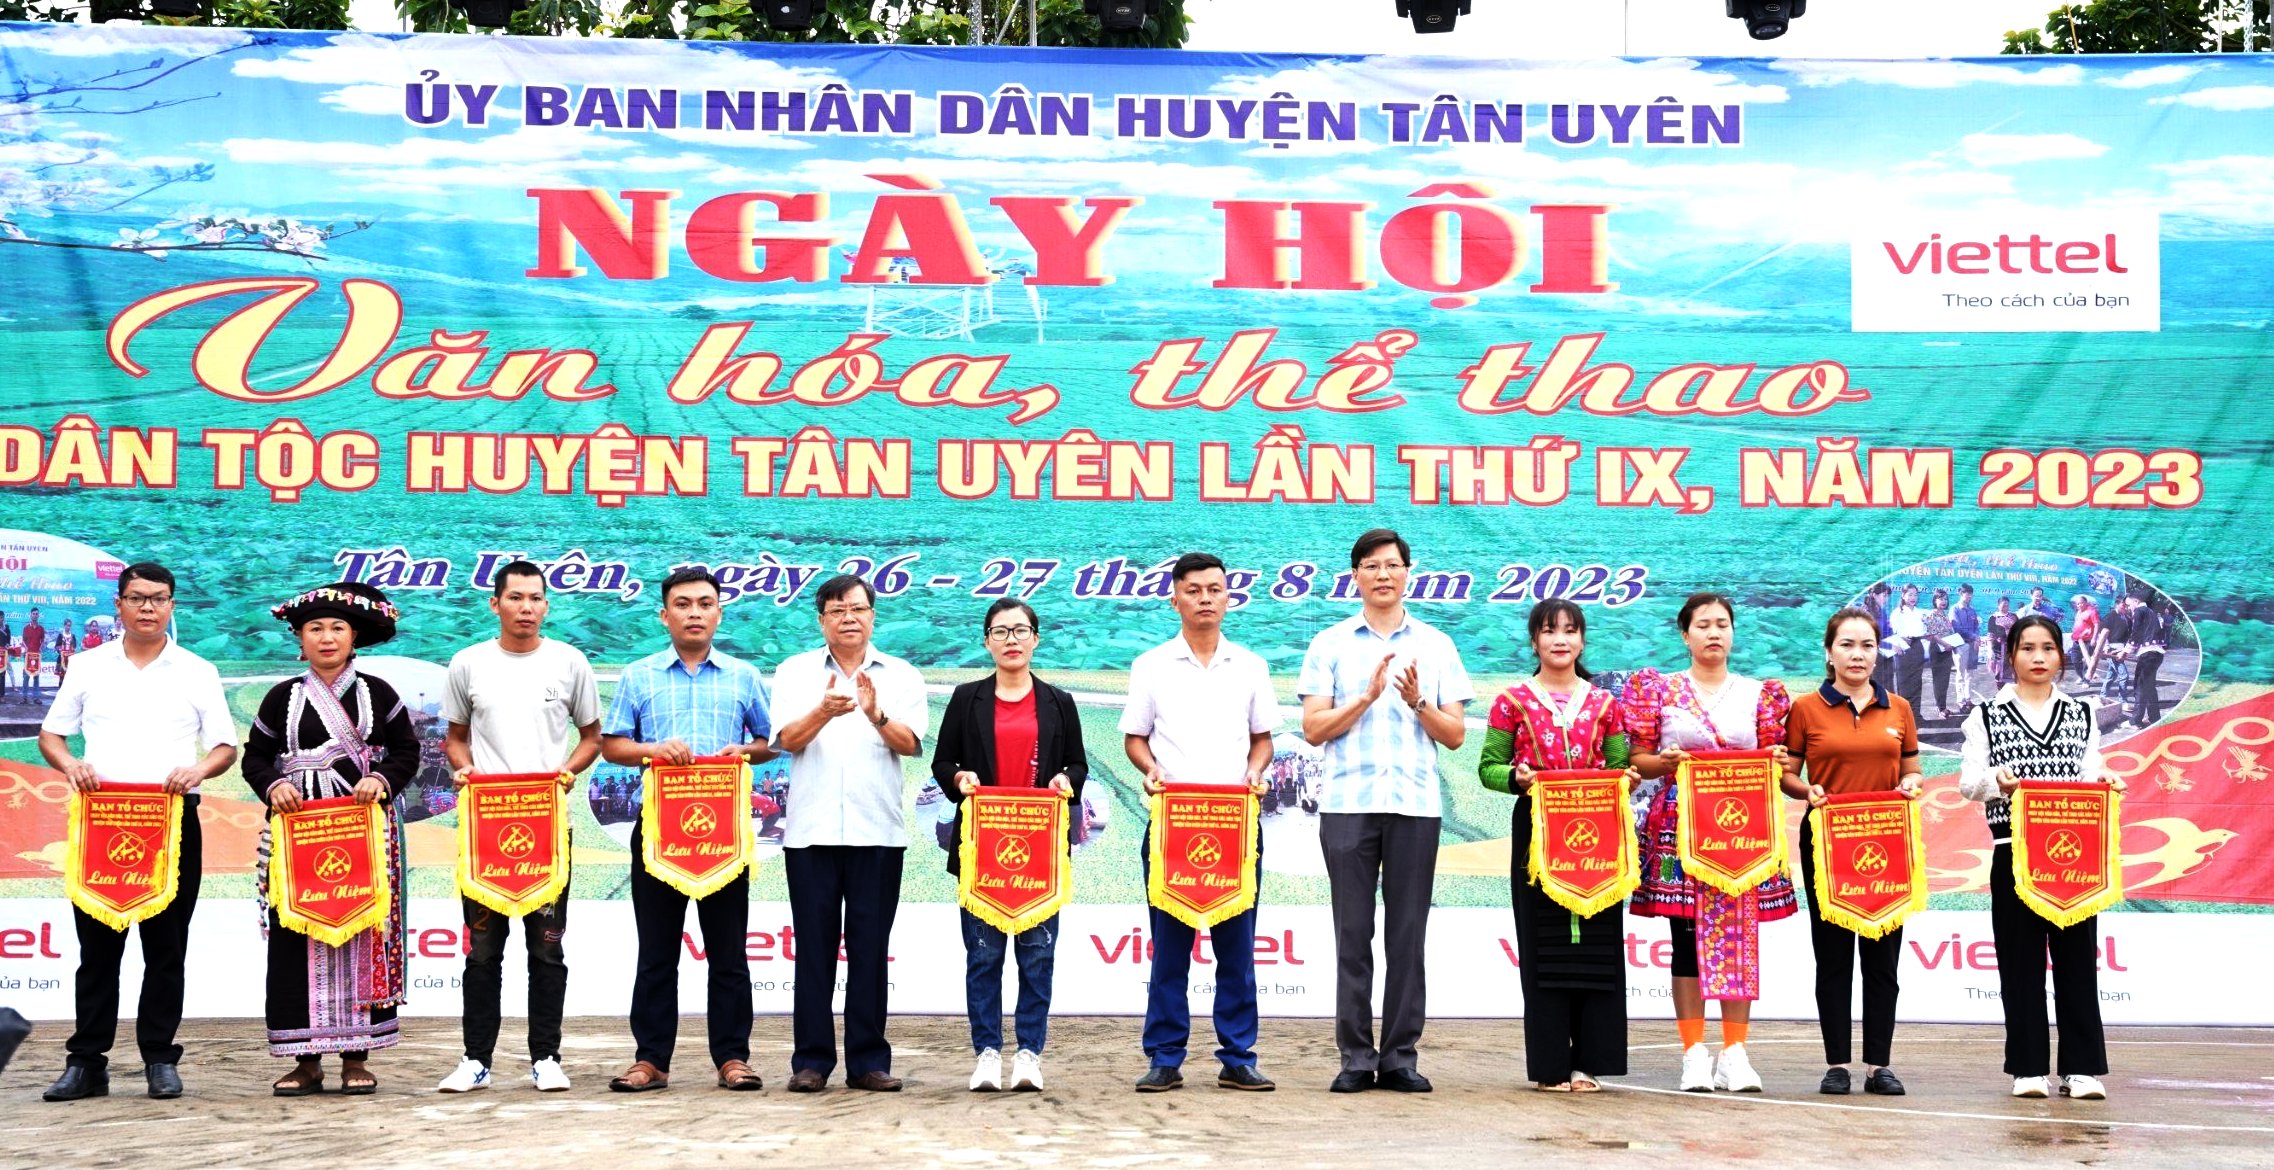 Các đồng chí lãnh đạo huyện Tân Uyên trao cờ lưu niệm cho các đội tham thi tham gia Ngày hội